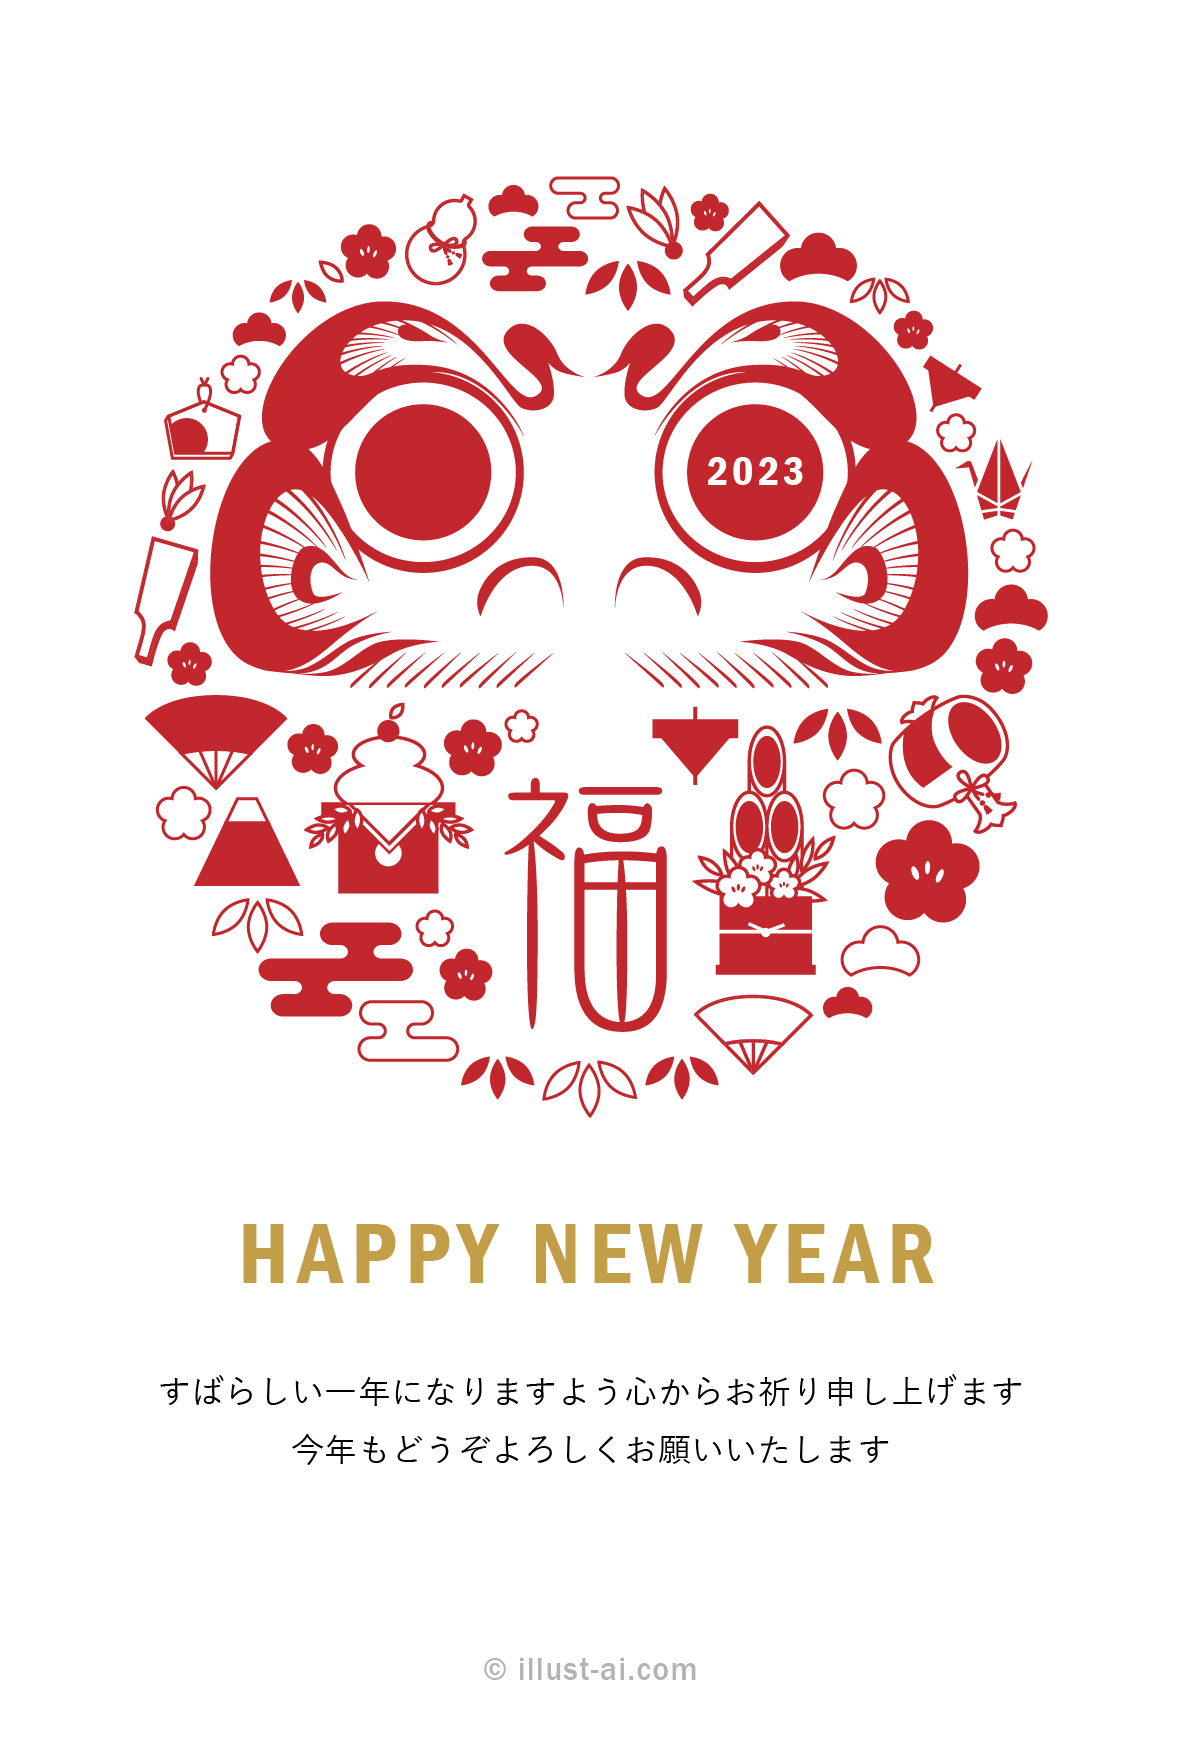 たくさんのお正月モチーフで飾られたシンプルなダルマの年賀状イラスト。鏡餅・門松・富士山・小槌や扇などの縁起の良い物が集まっているので、新年の挨拶状にぴったりです。まん丸の赤いダルマが日の出の太陽にも見えますね♪ダルマの目に書かれている「2023」がポイントです。日ごろお世話になっている方への新年の挨拶や近況報告に「お正月モチーフで飾られたダルマのイラスト」を送ってみてはいかがでしょうか？